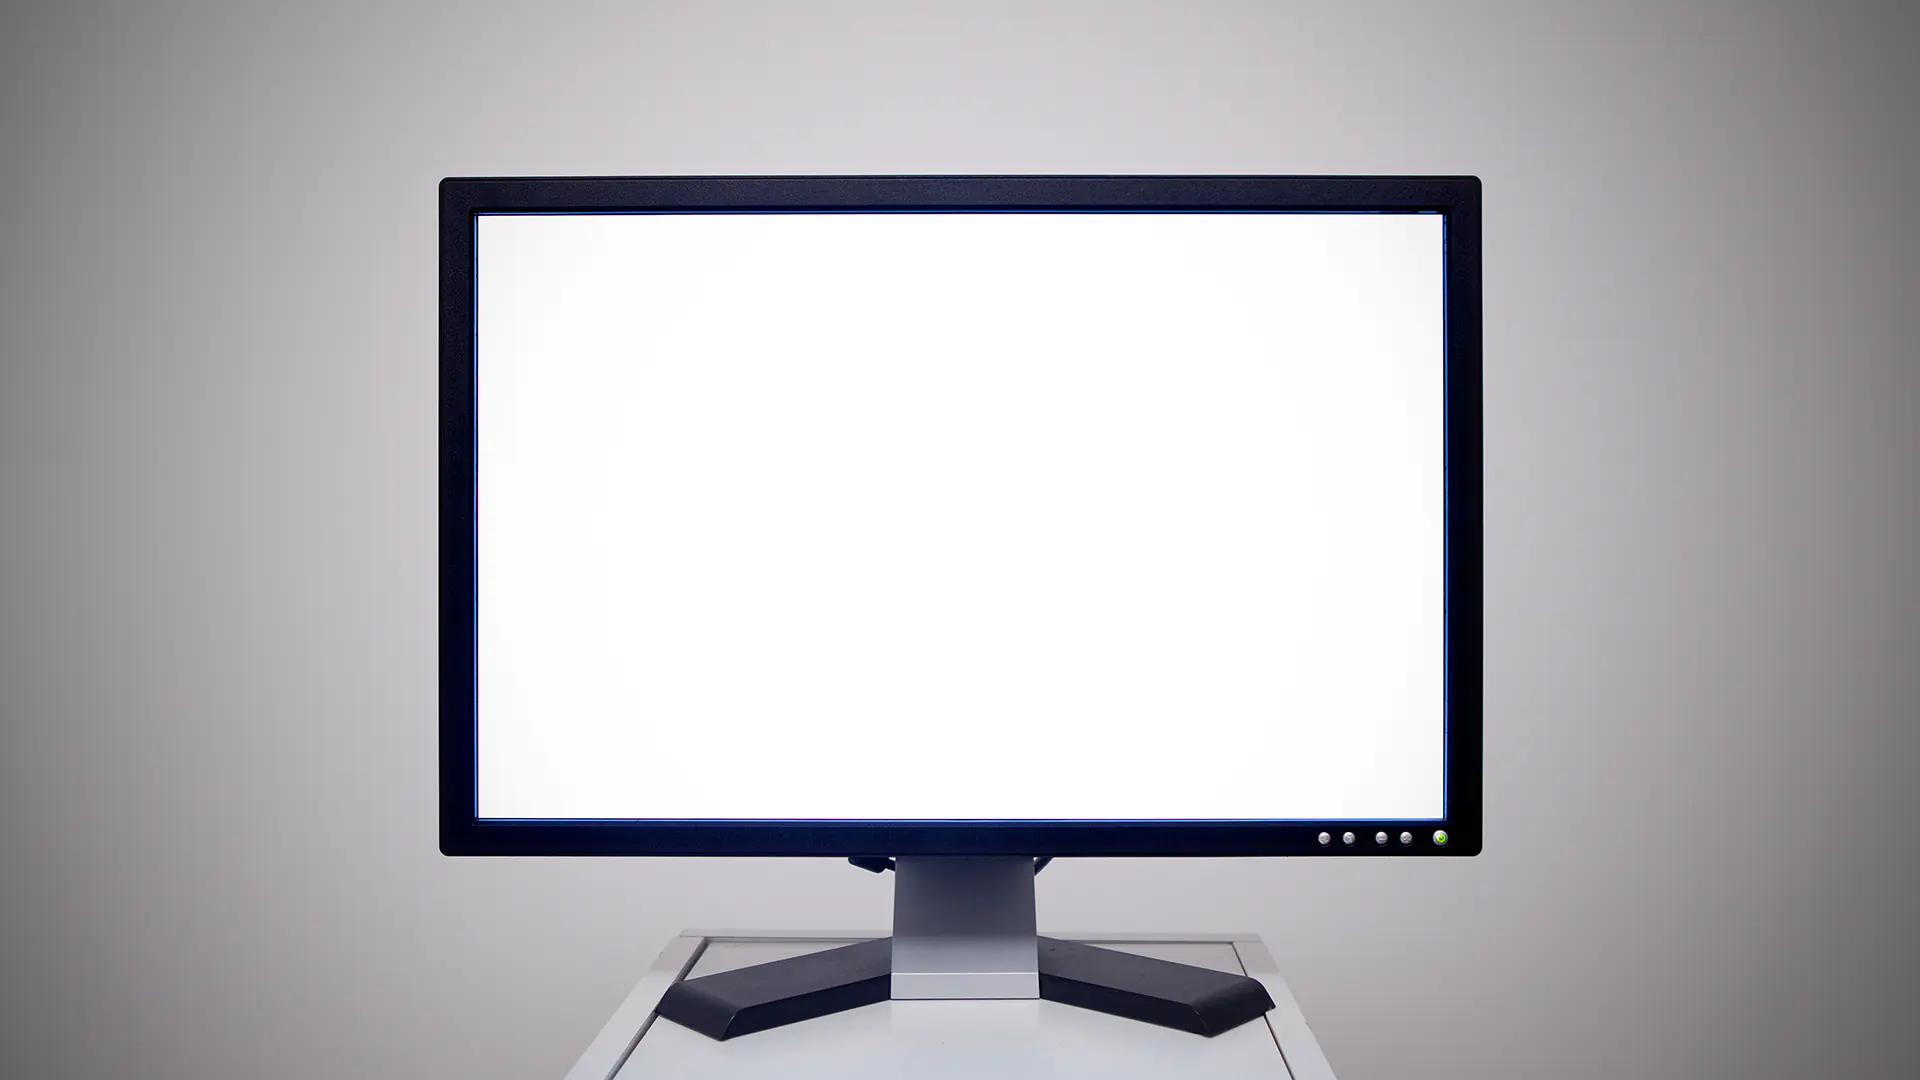 A képen egy TV képernyője látható, ami üres és fehéren világít.